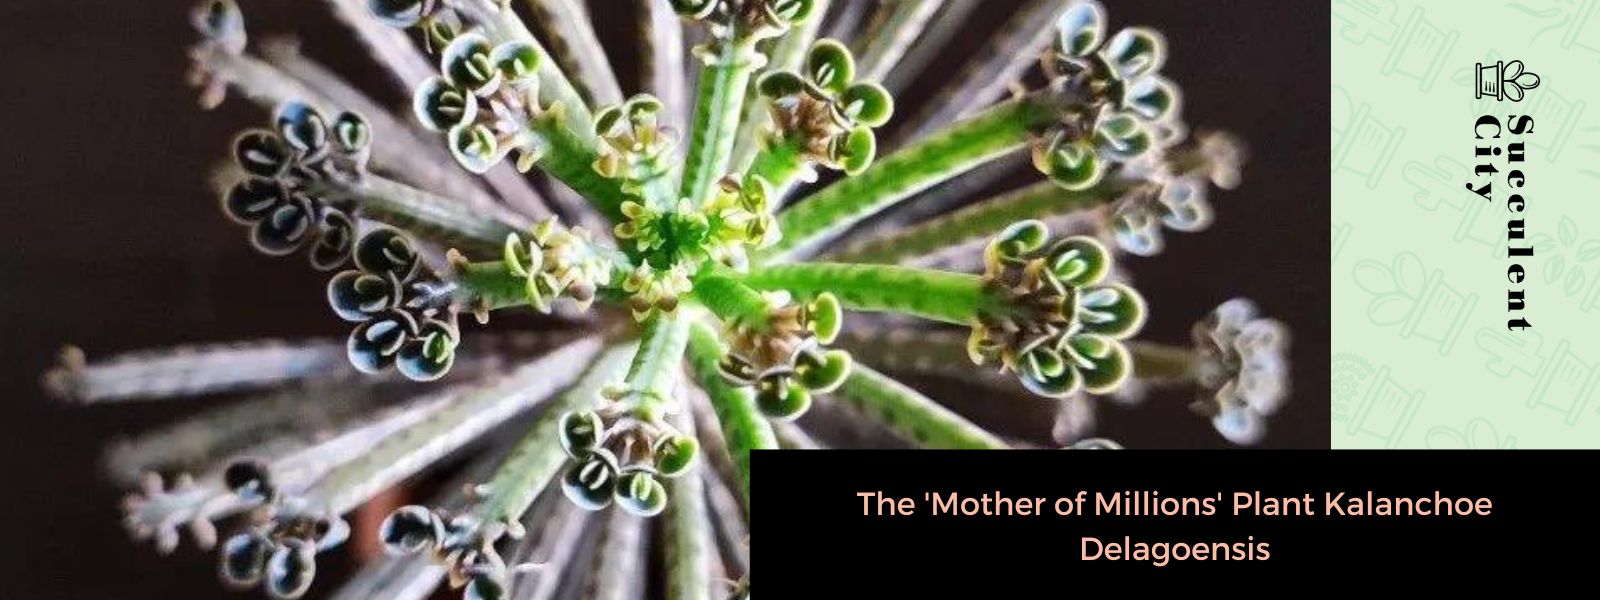 La planta “Madre de Millones” Kalanchoe Delagoensis